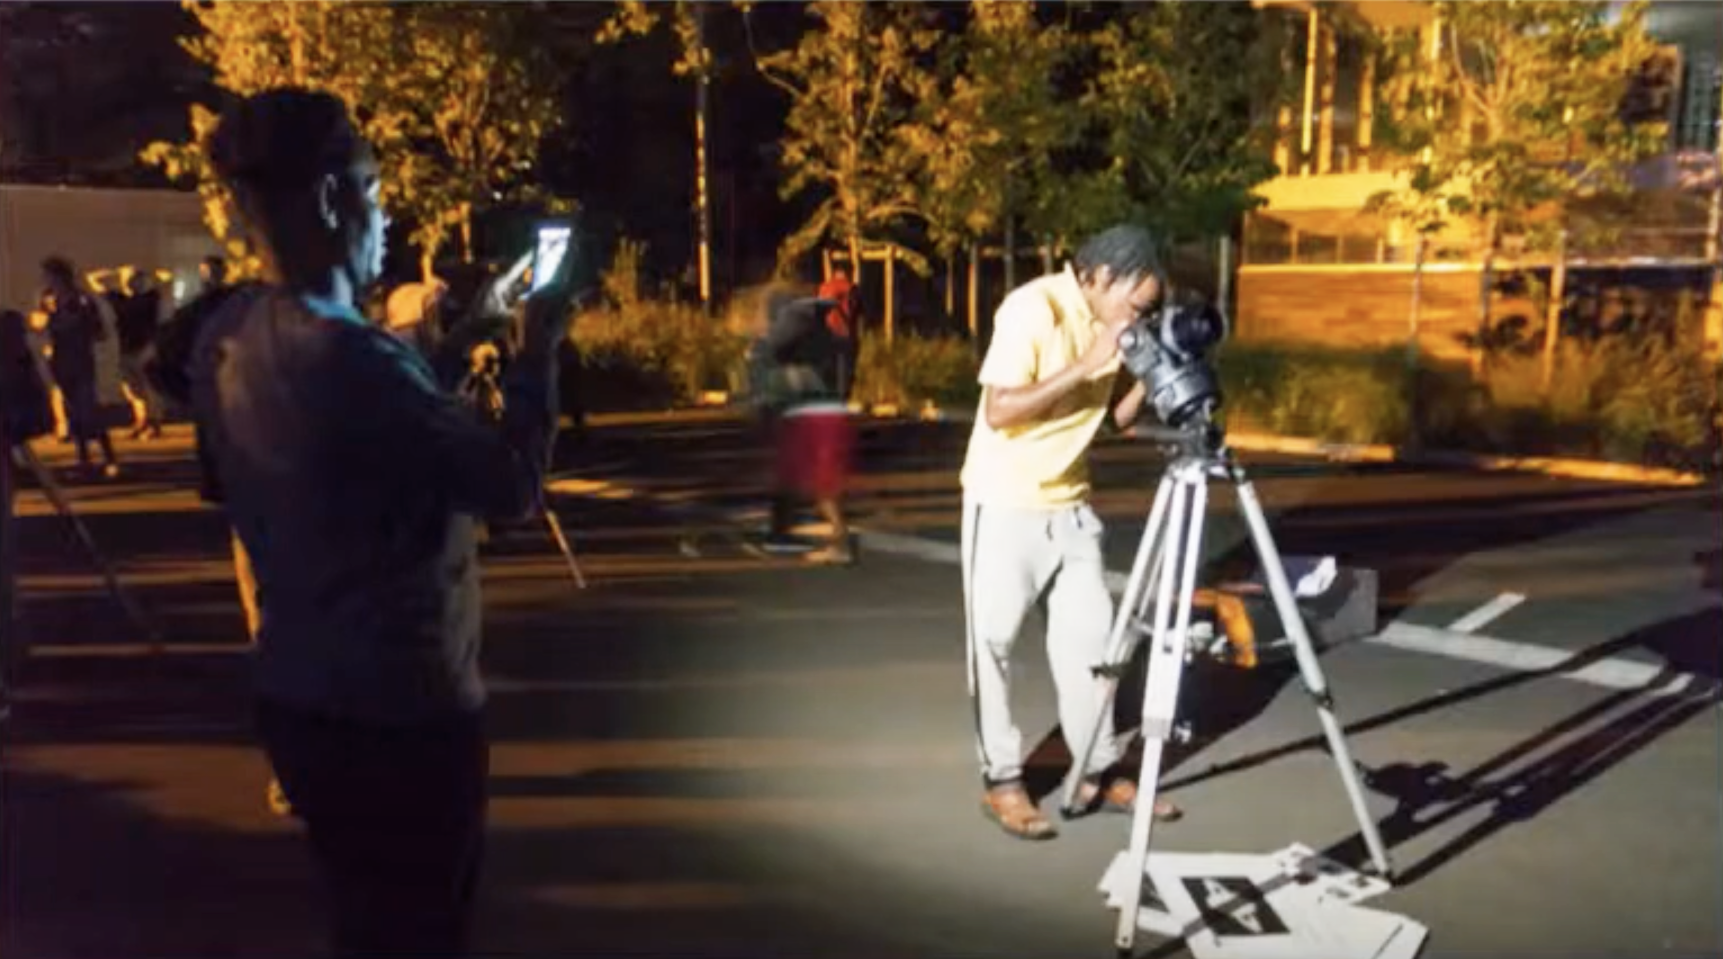 Un migrant observant dans un télescope sur un parking pendant qu'un autre le prend en photo